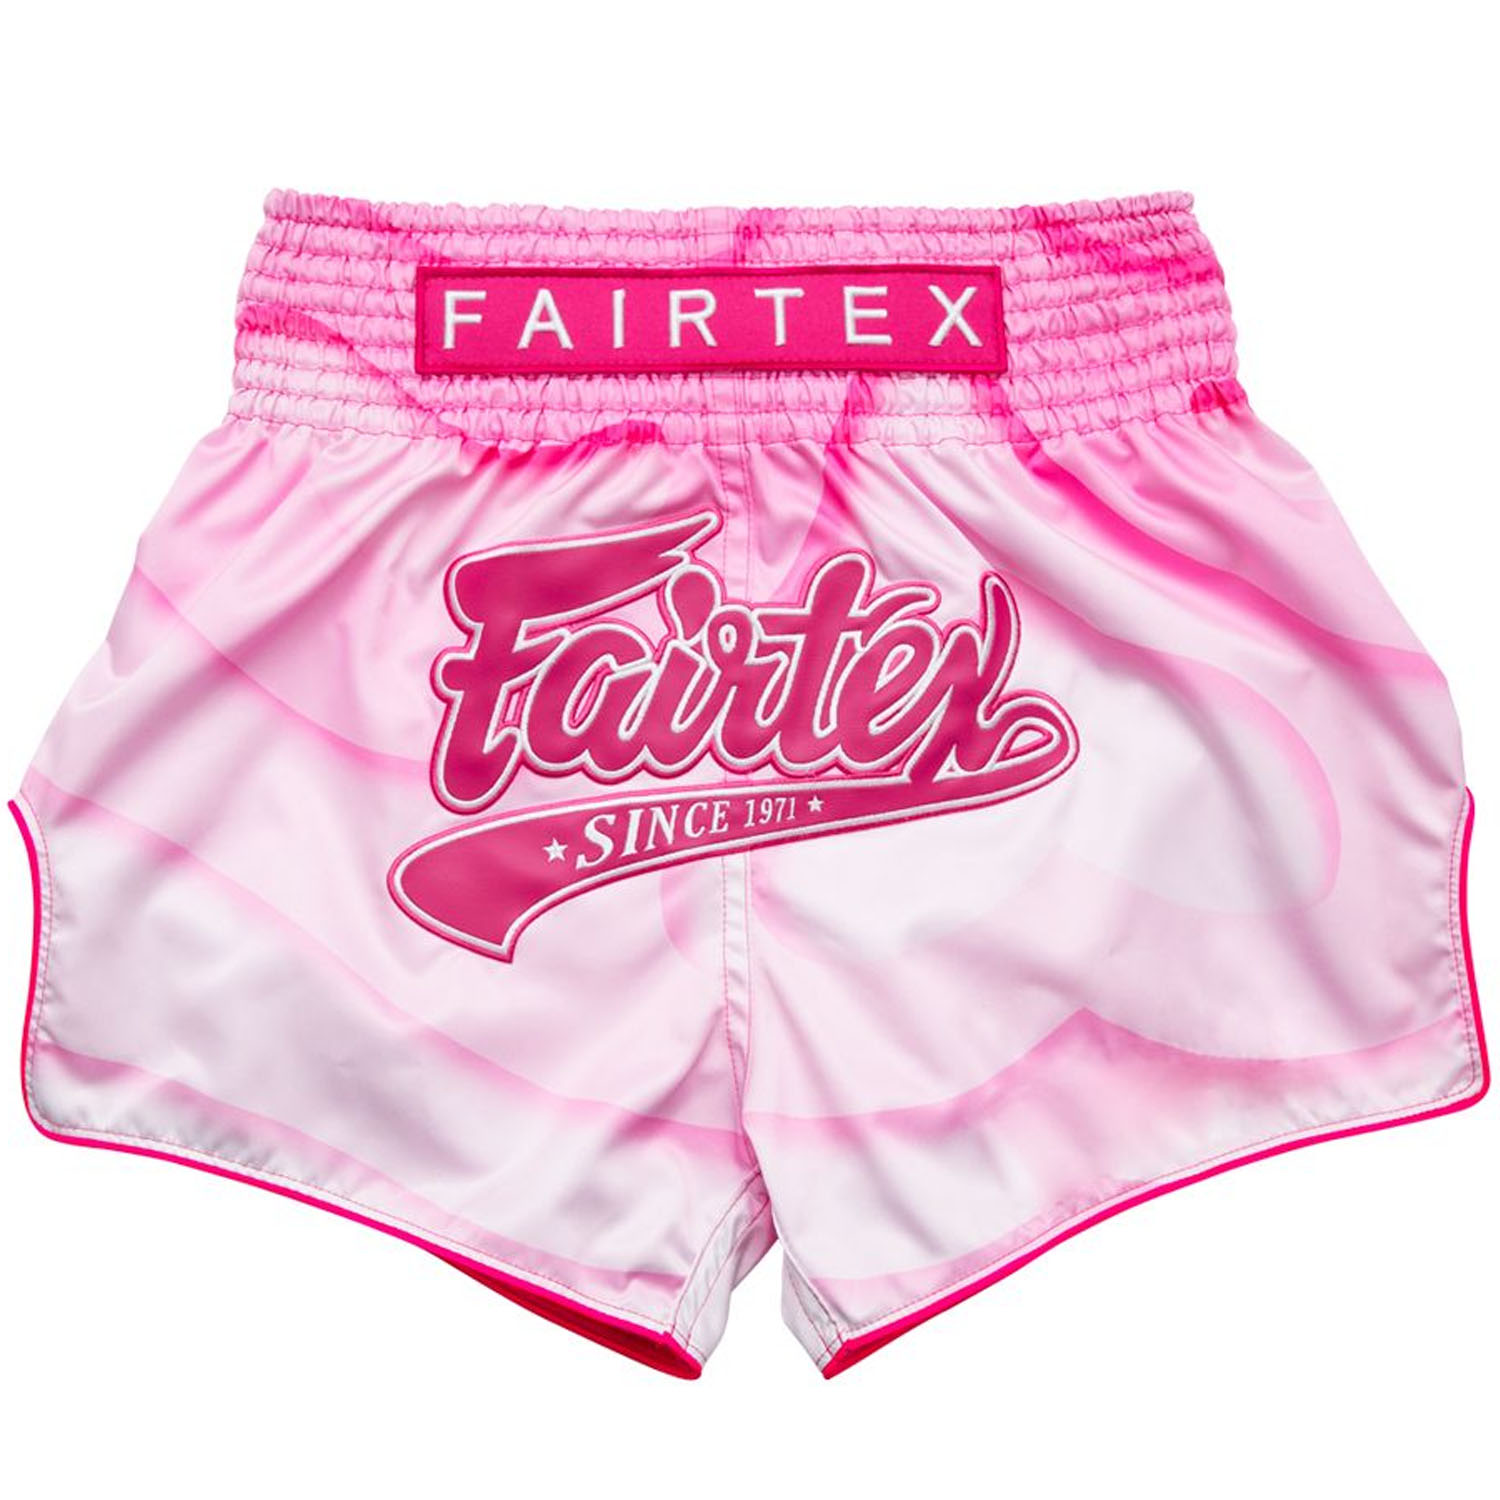 Fairtex Muay Thai Shorts, BS1914, pink